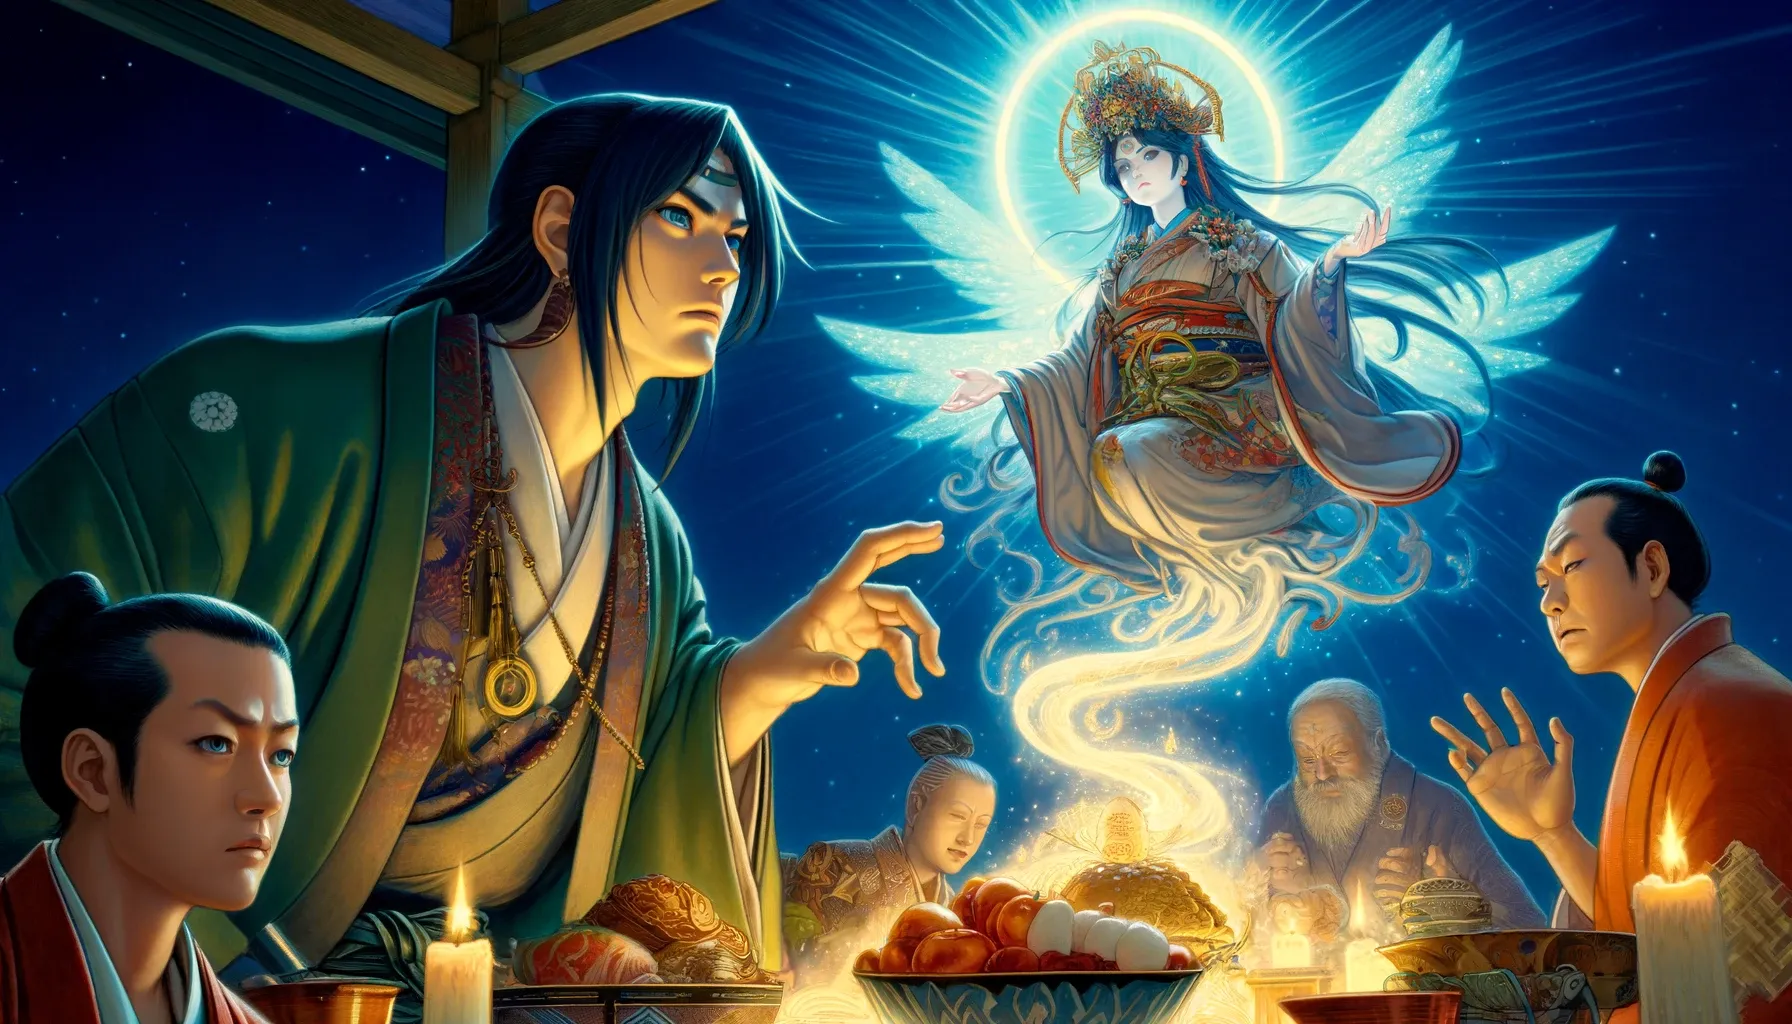 Tsukuyomi confrontando a Ukemochi en el banquete, mientras Amaterasu observa desde el cielo con desaprobación.